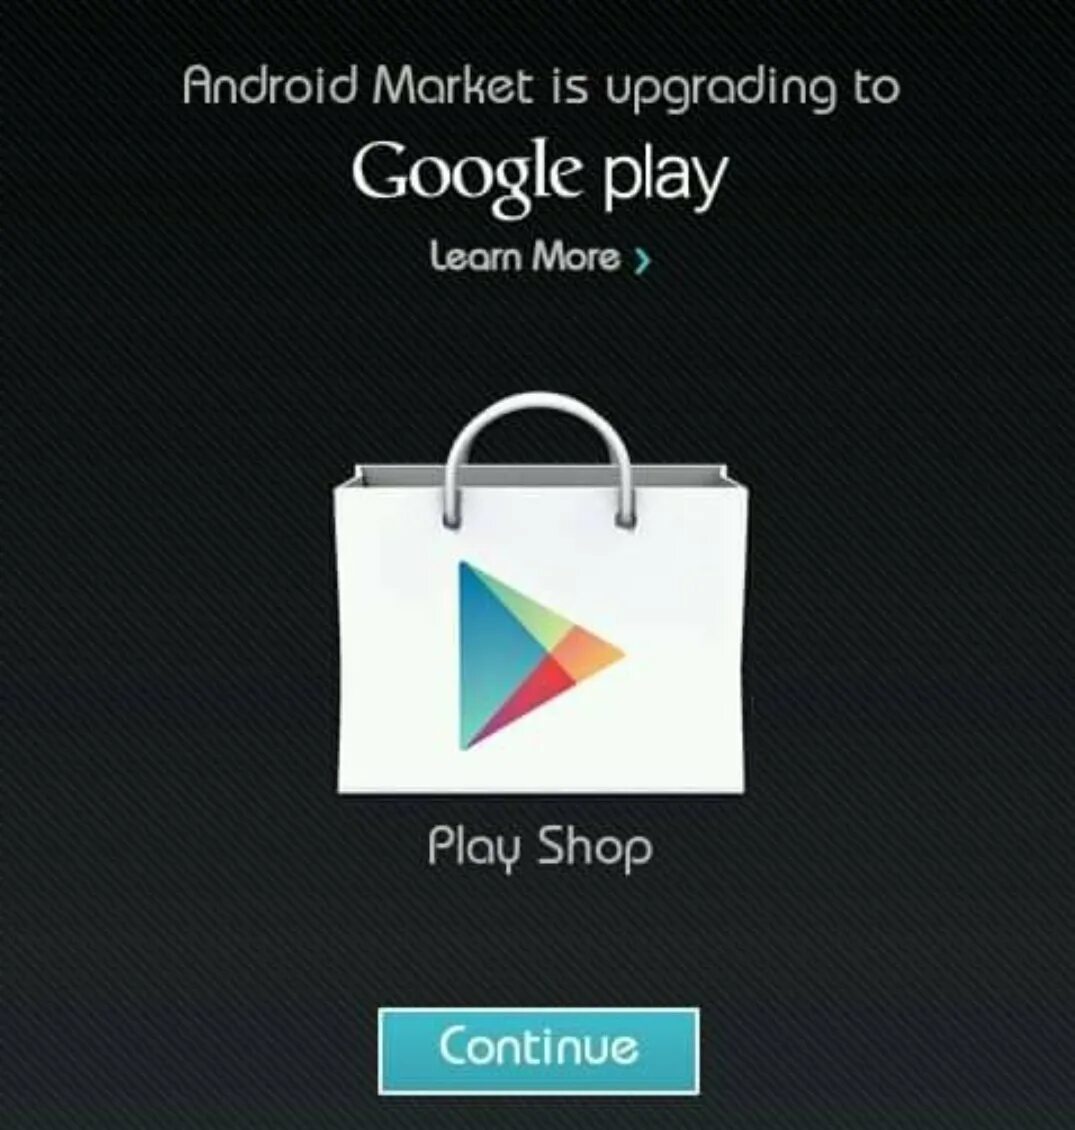 Плей Маркет. Плей Маркет фото. Андроид Маркет. Google Play Market (плей Маркет). Открыть сайт плей маркета